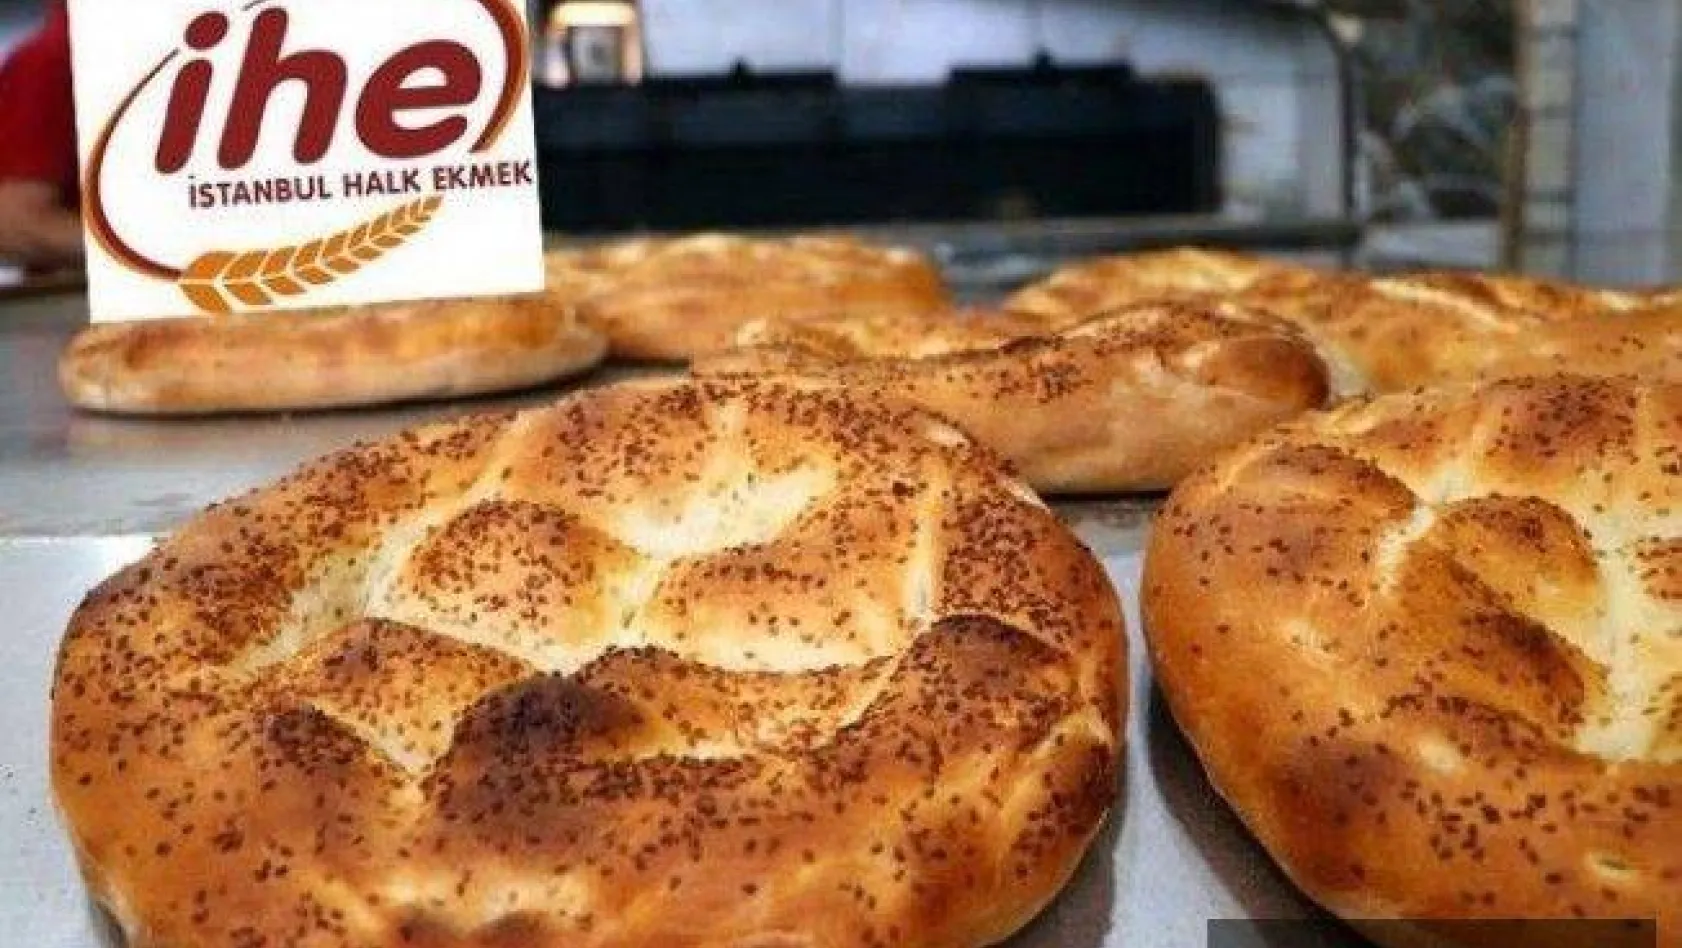 İstanbul'da Halk Ekmek pide fiyatı 1 TL